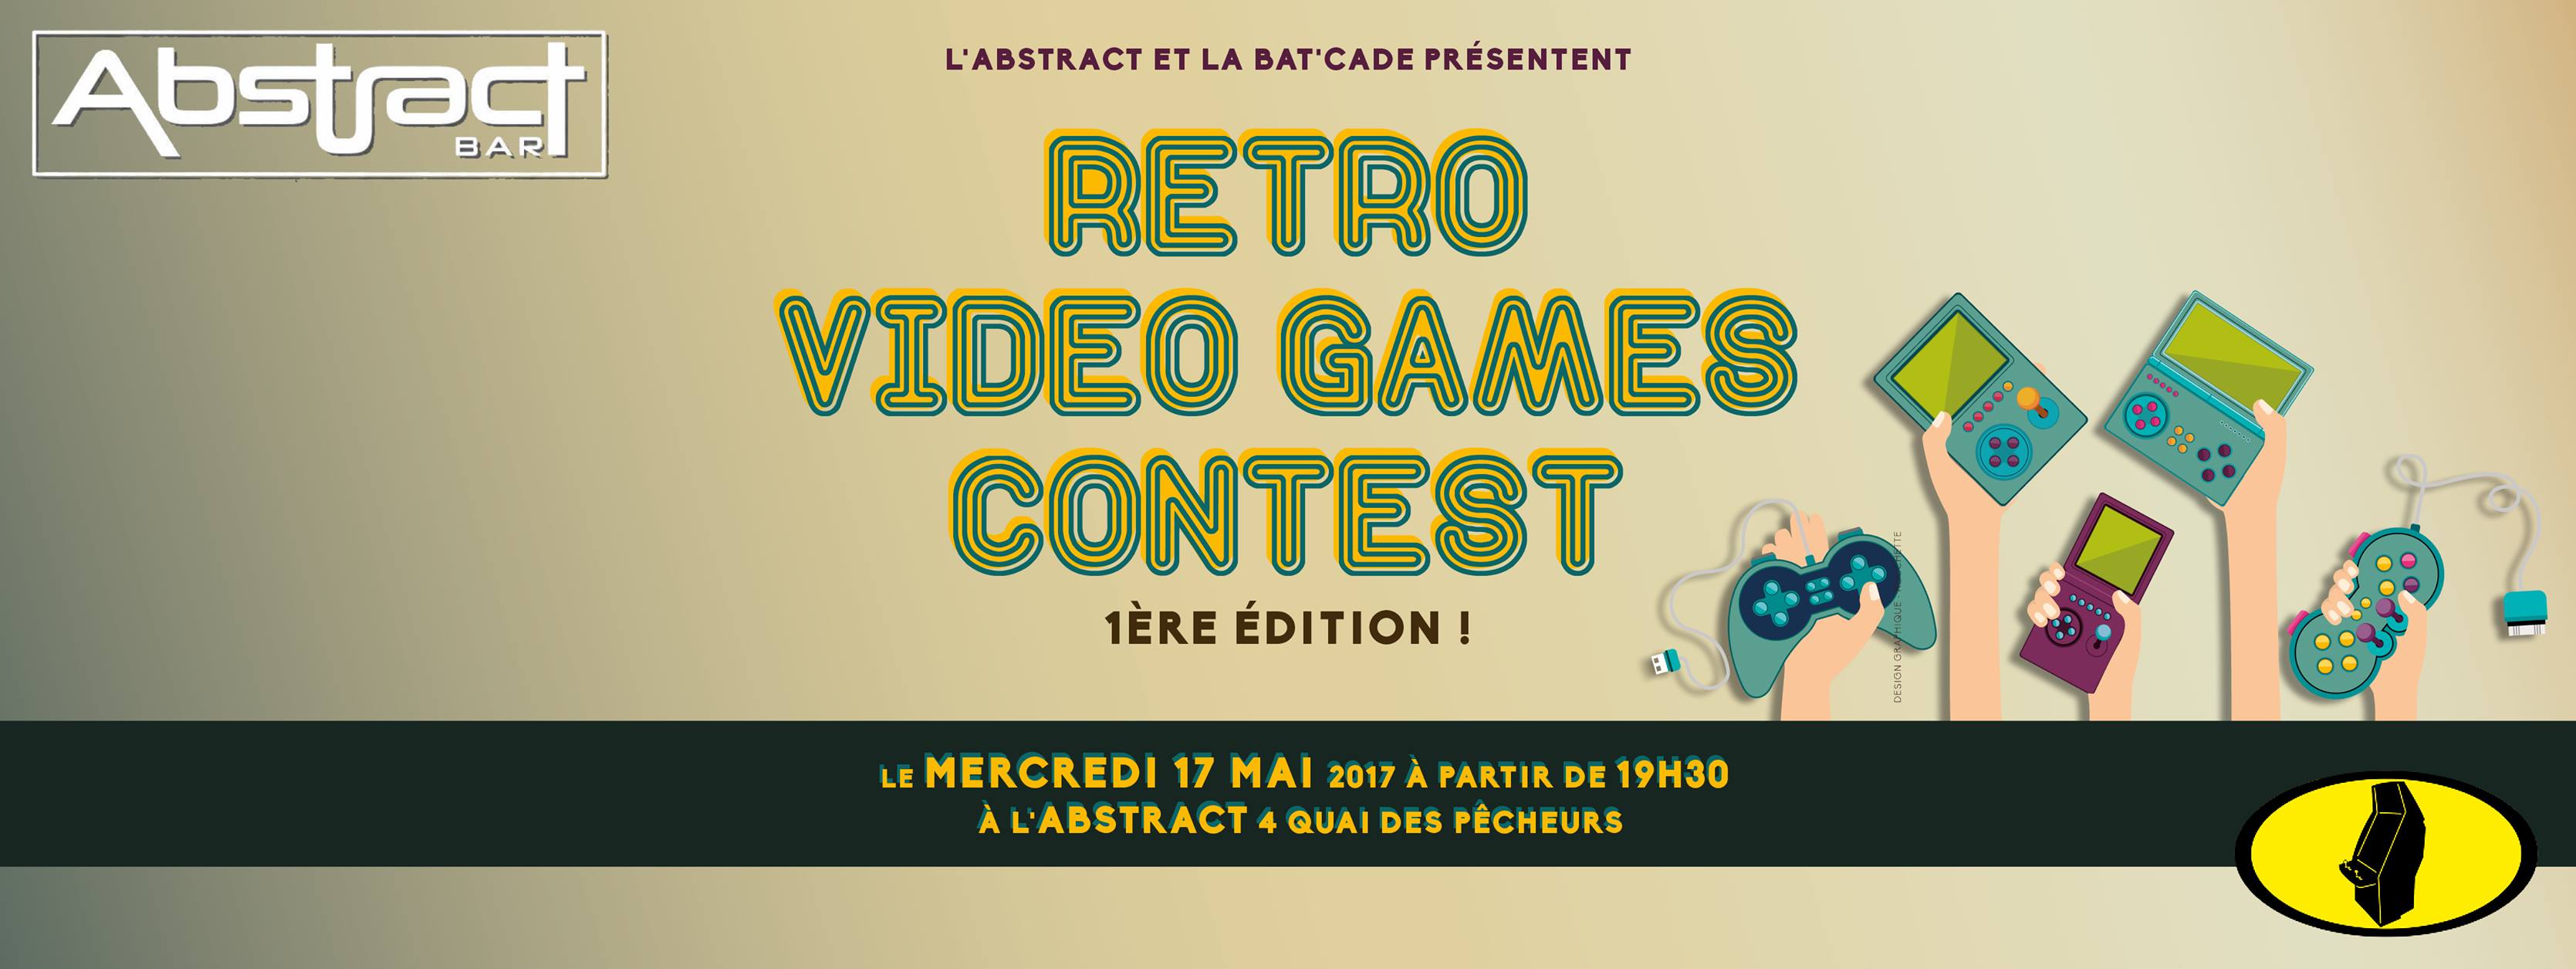 [ÉVÉNEMENT] Retro video games contest #1